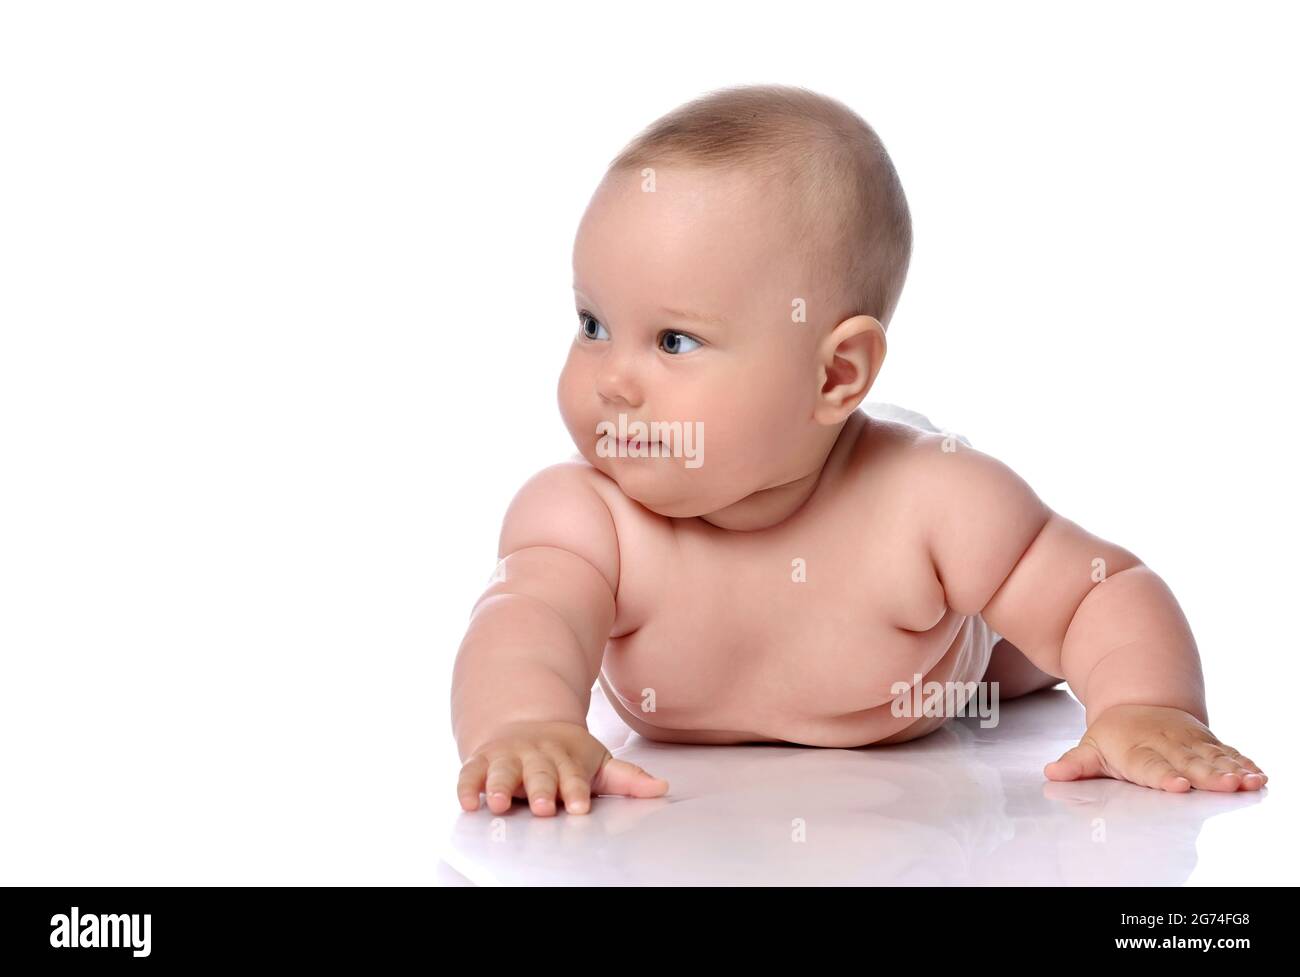 Schlaue, neugierige Kleinkind Baby Mädchen Kind in Windel liegt auf ihrem Bauch, Bauch und schaut zur Seite Stockfoto